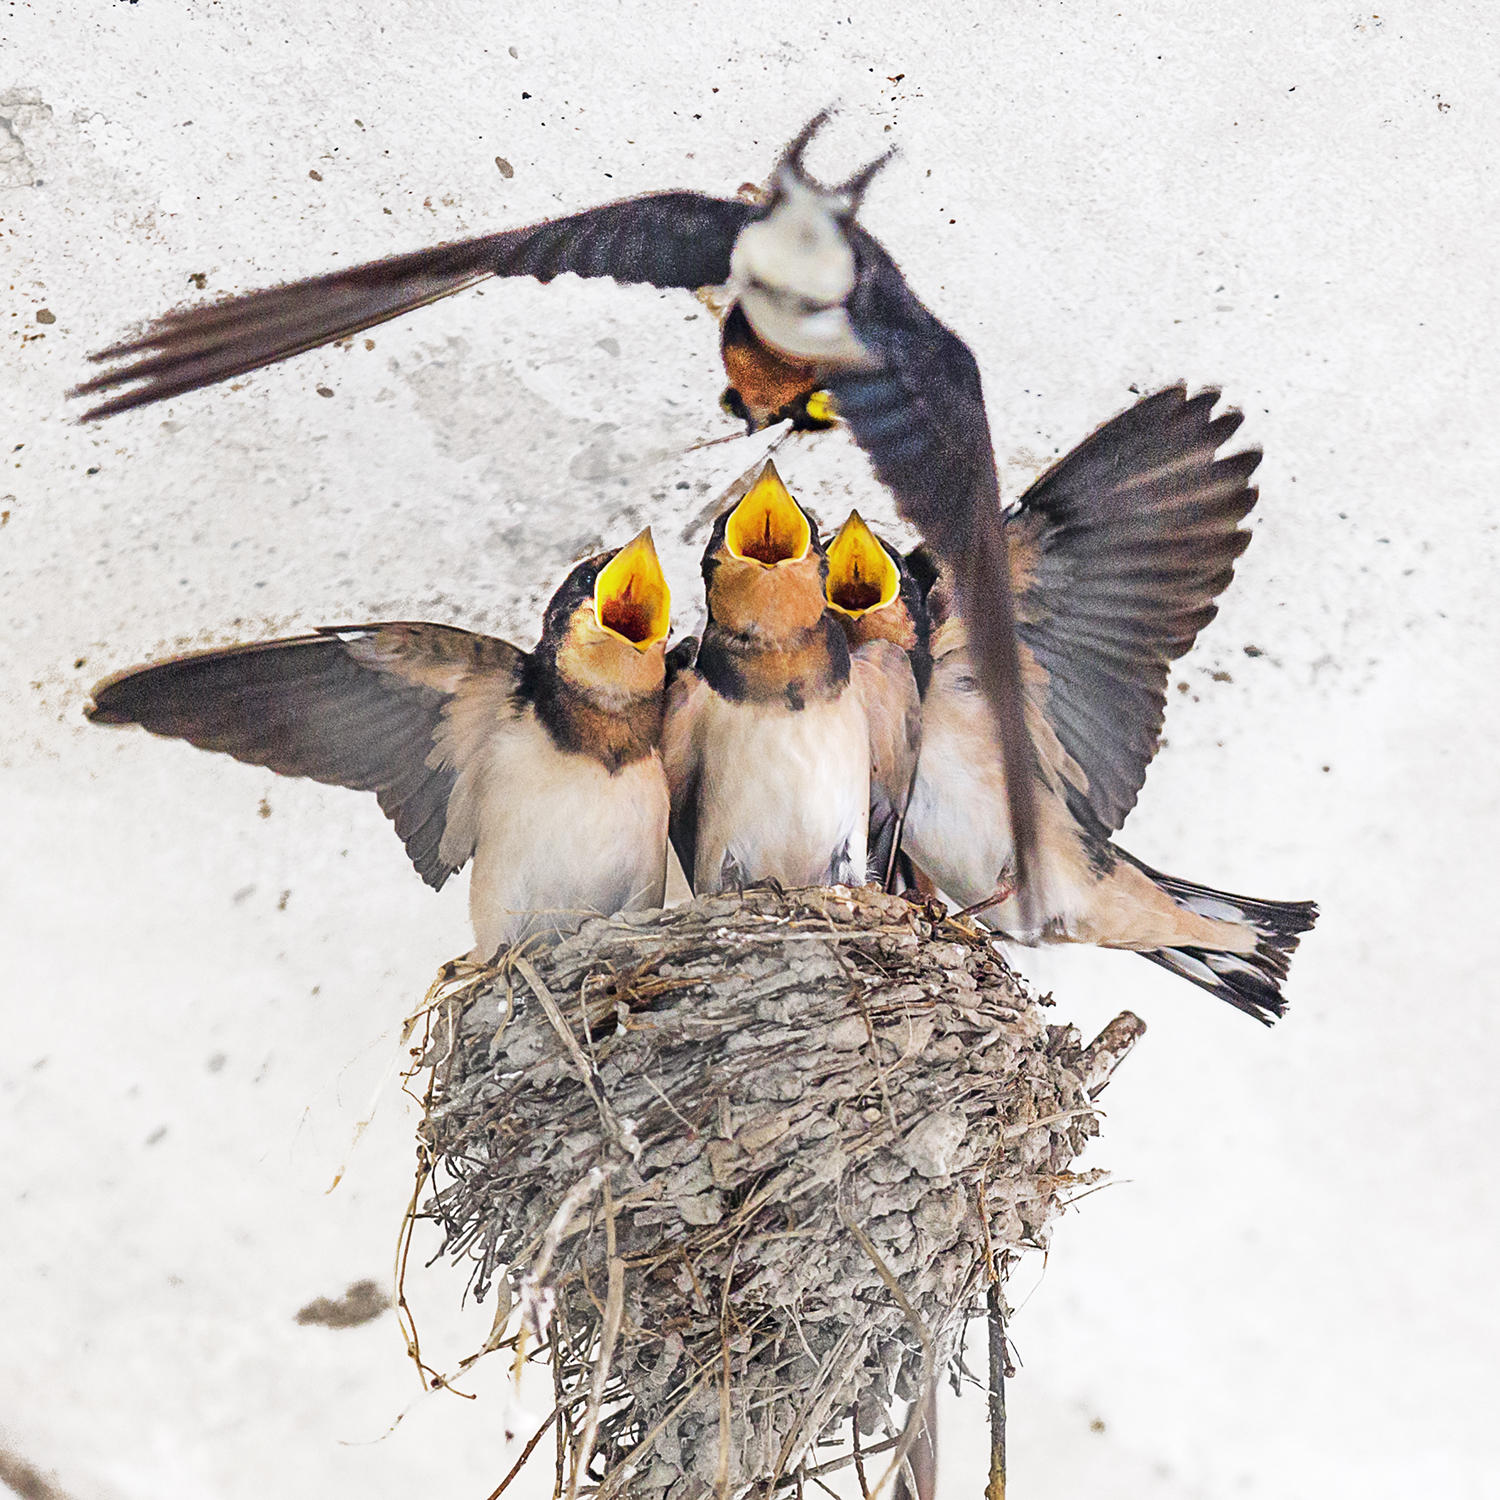 几只刚刚孵出不久的小鸟在窝里嗷嗷待哺,鸟妈妈将寻来的食物嘴对嘴